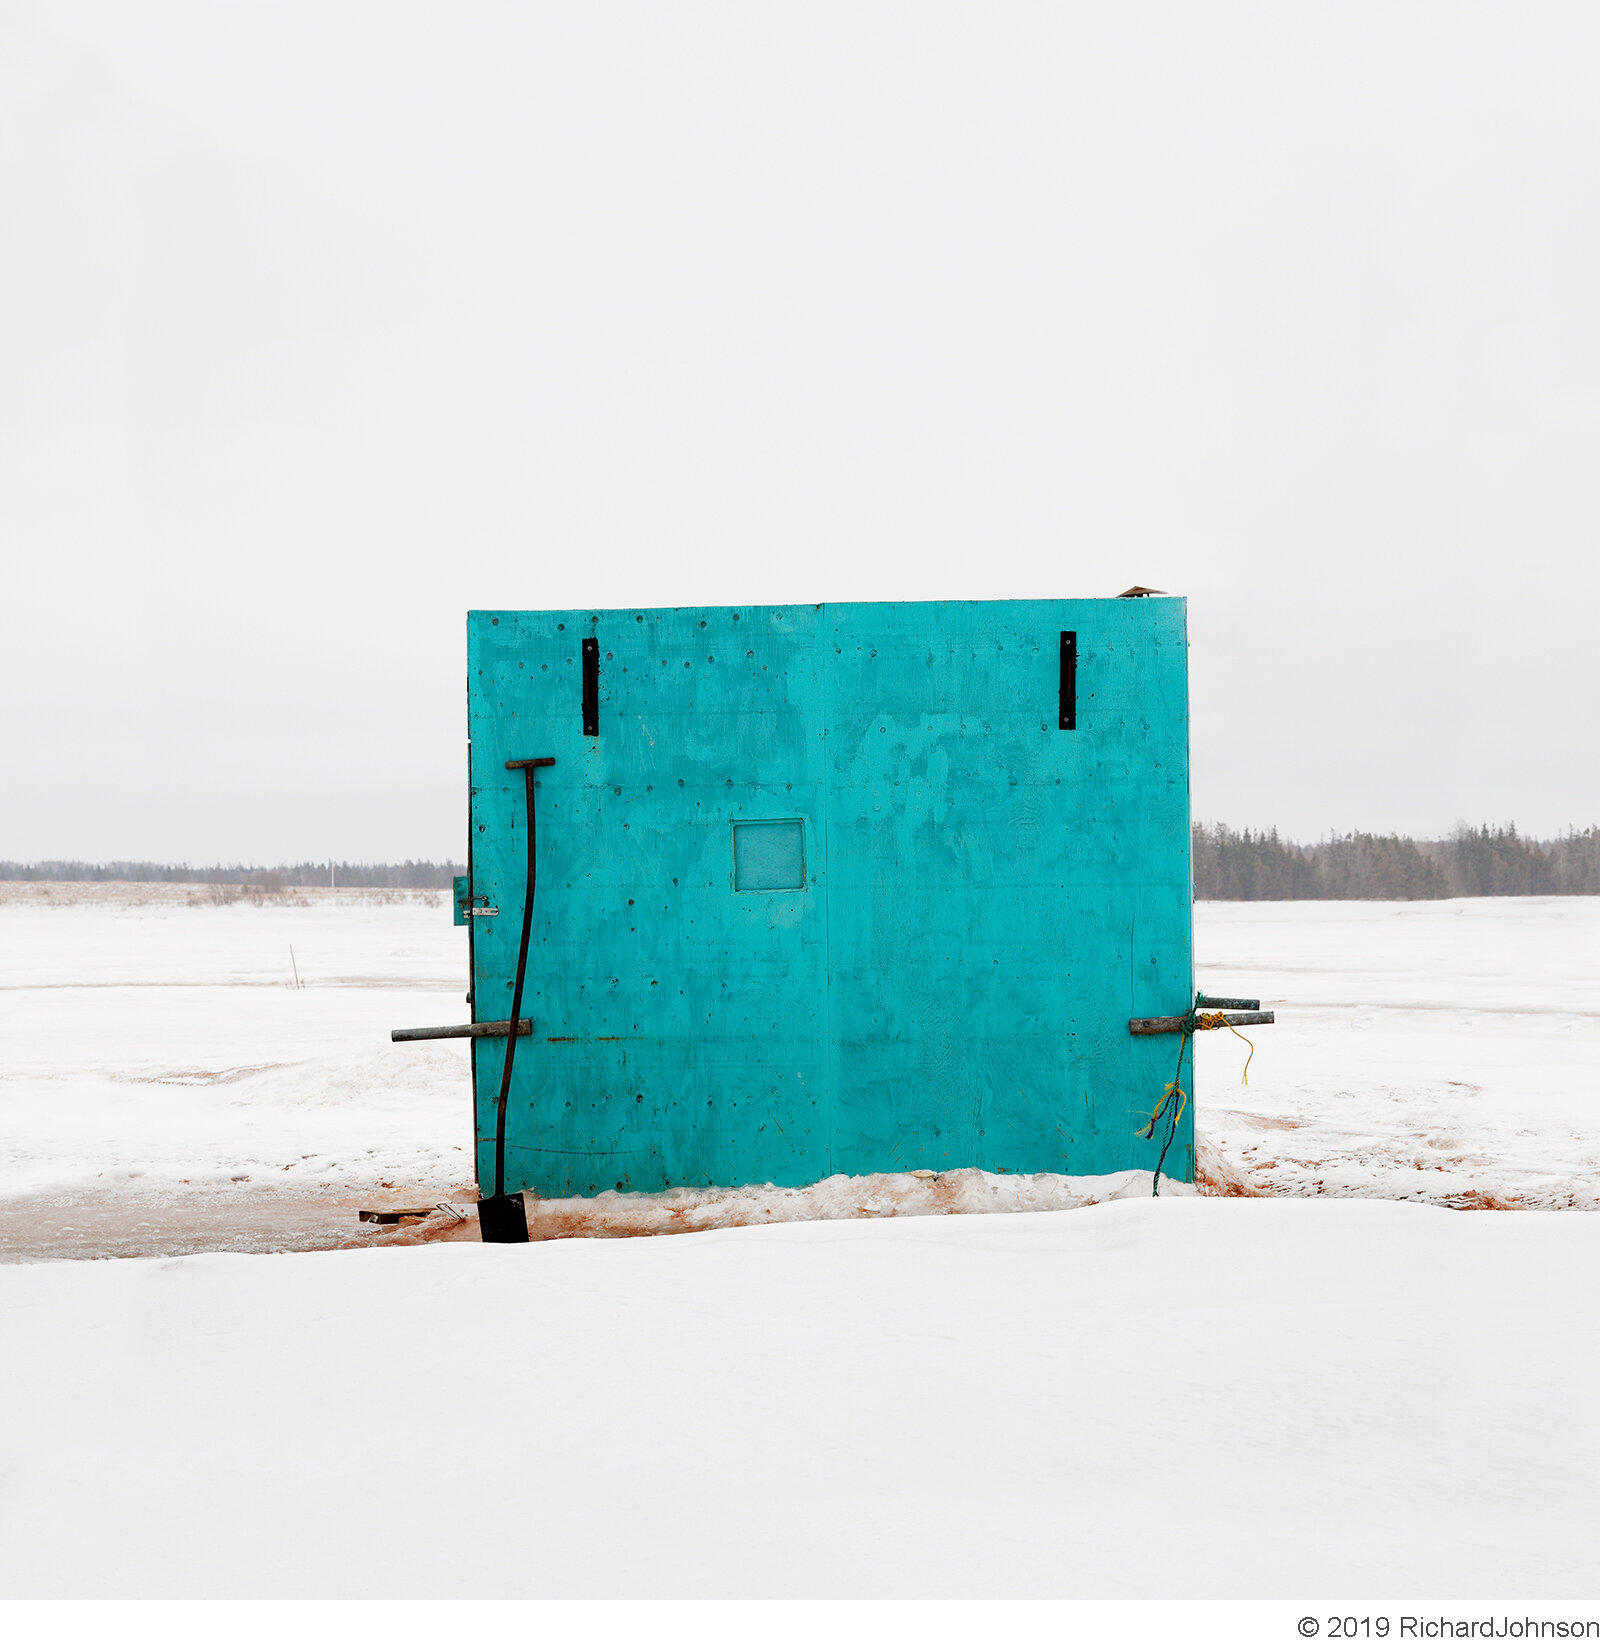 Ice Hut # 211 - Malpeque Bay, Prince Edward Island, Canada, 2009